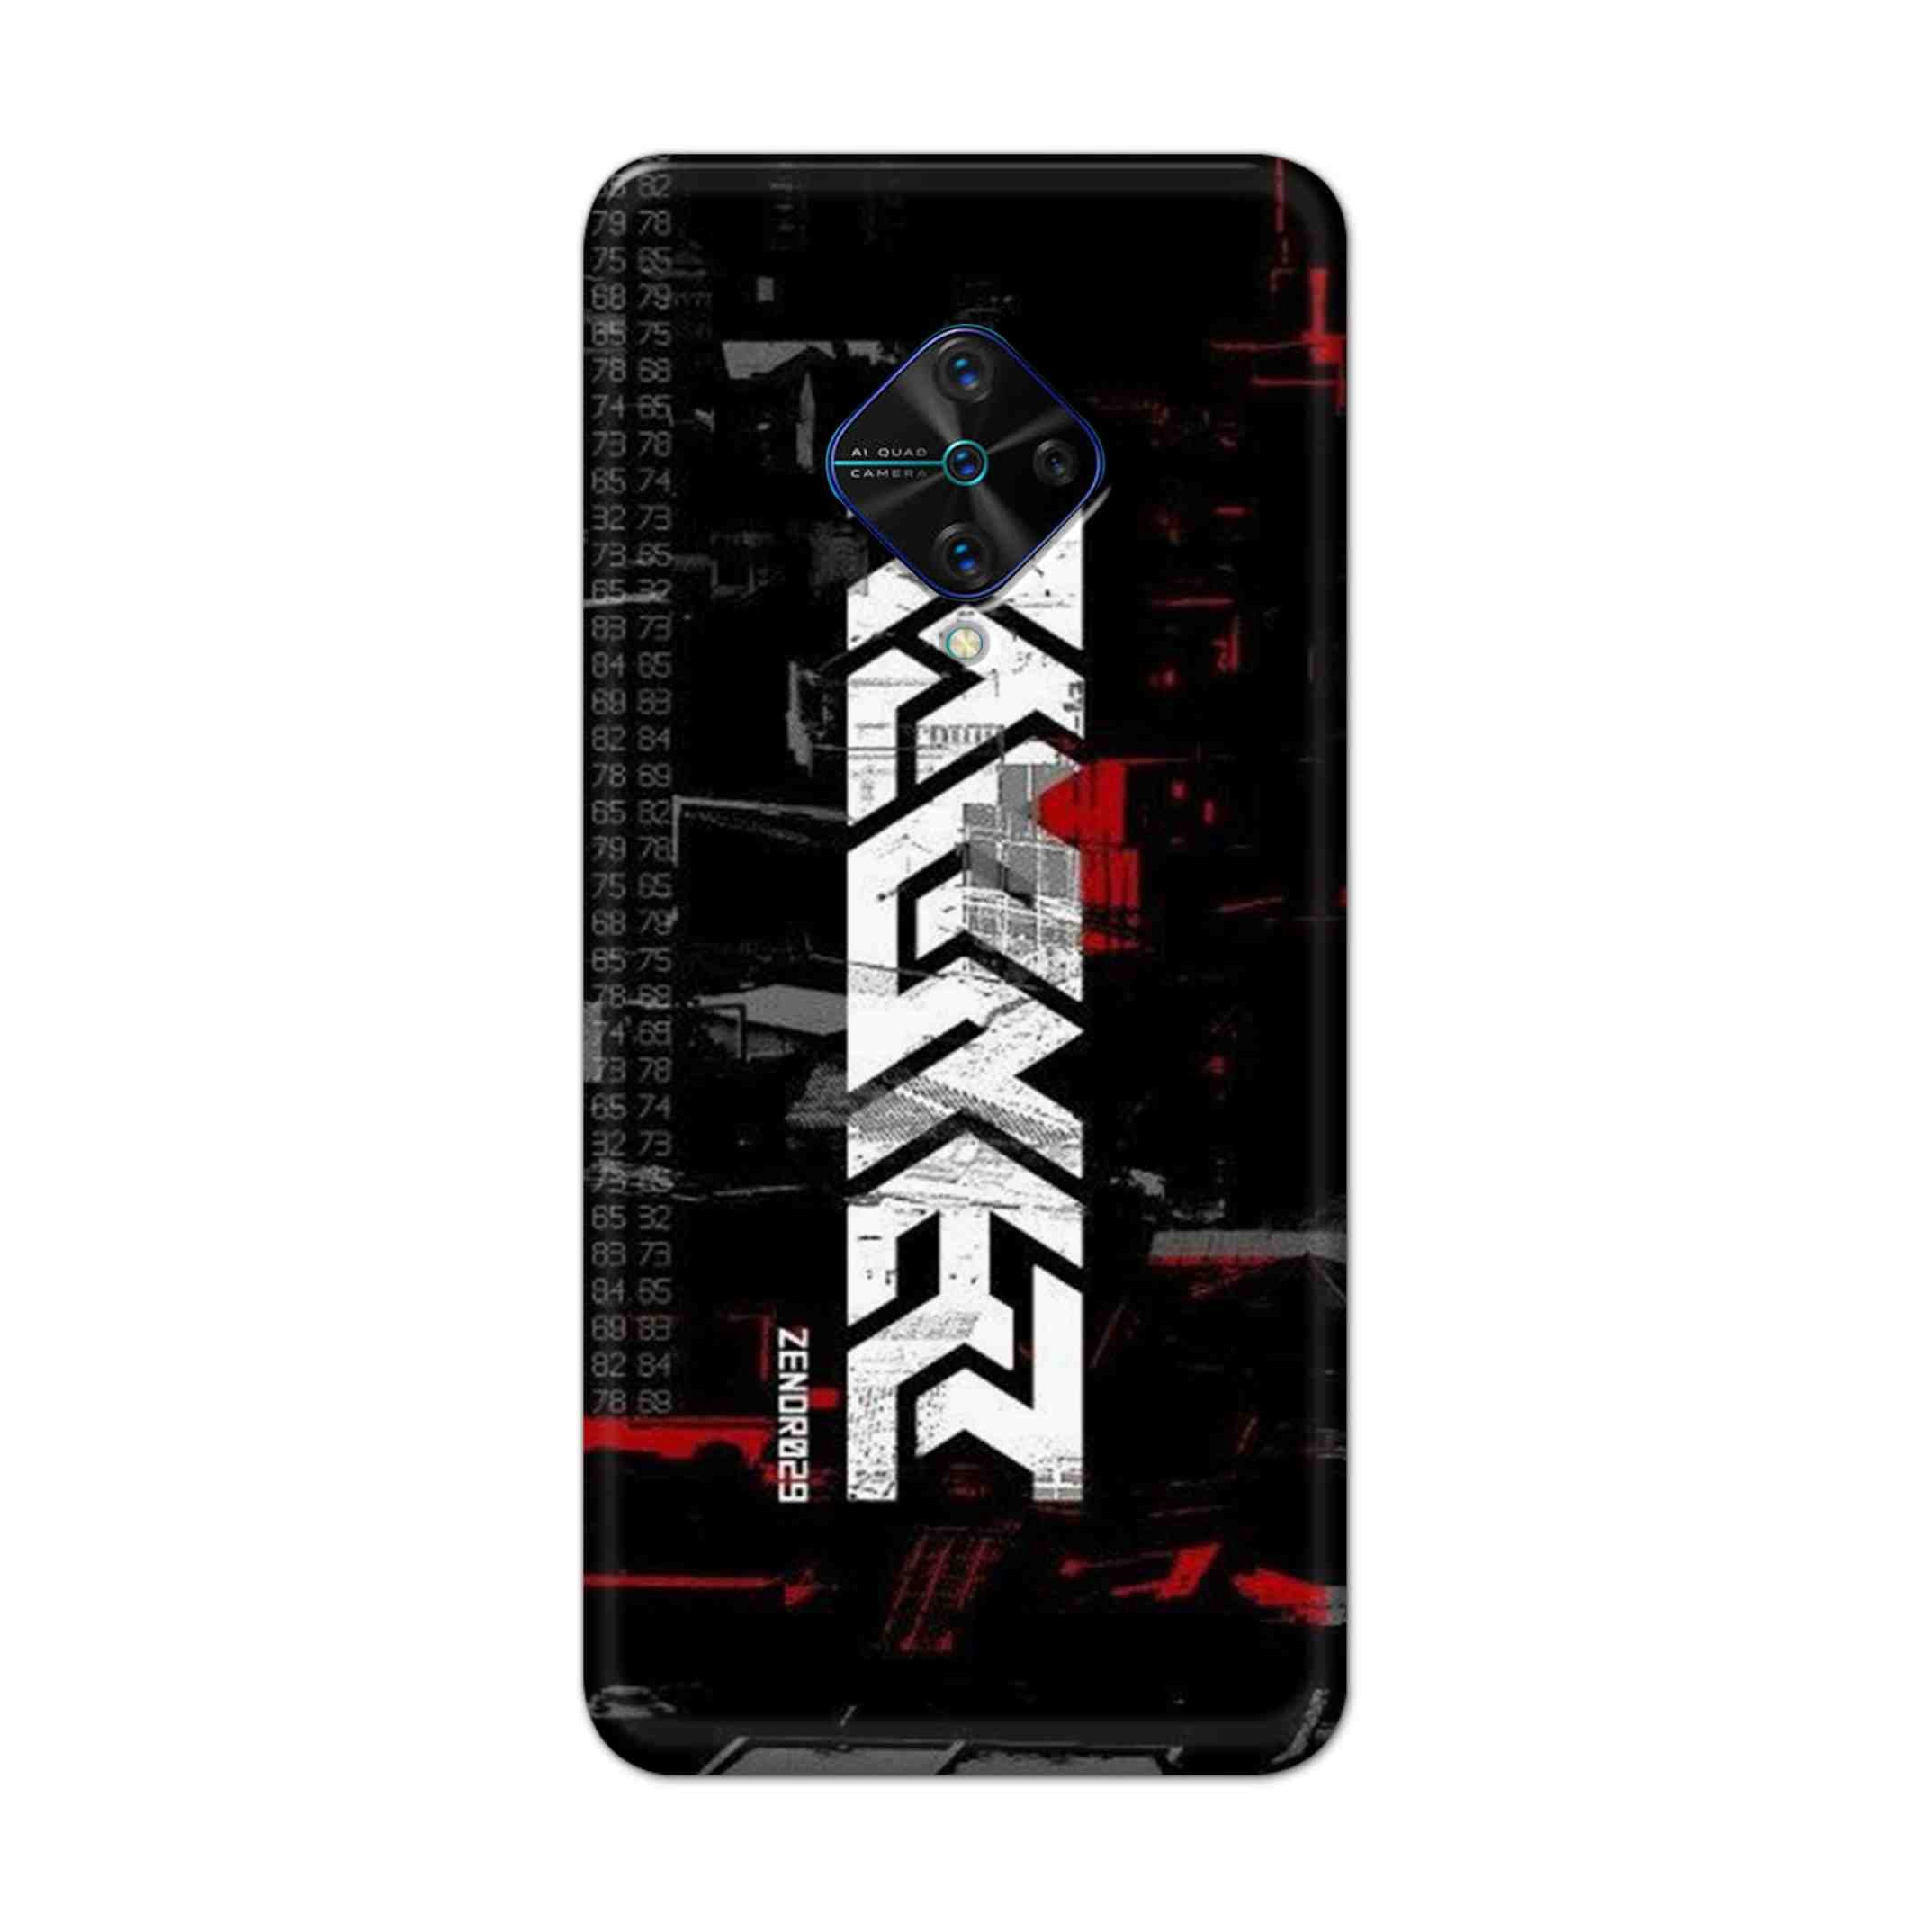 Buy Raxer Hard Back Mobile Phone Case Cover For Vivo S1 Pro Online